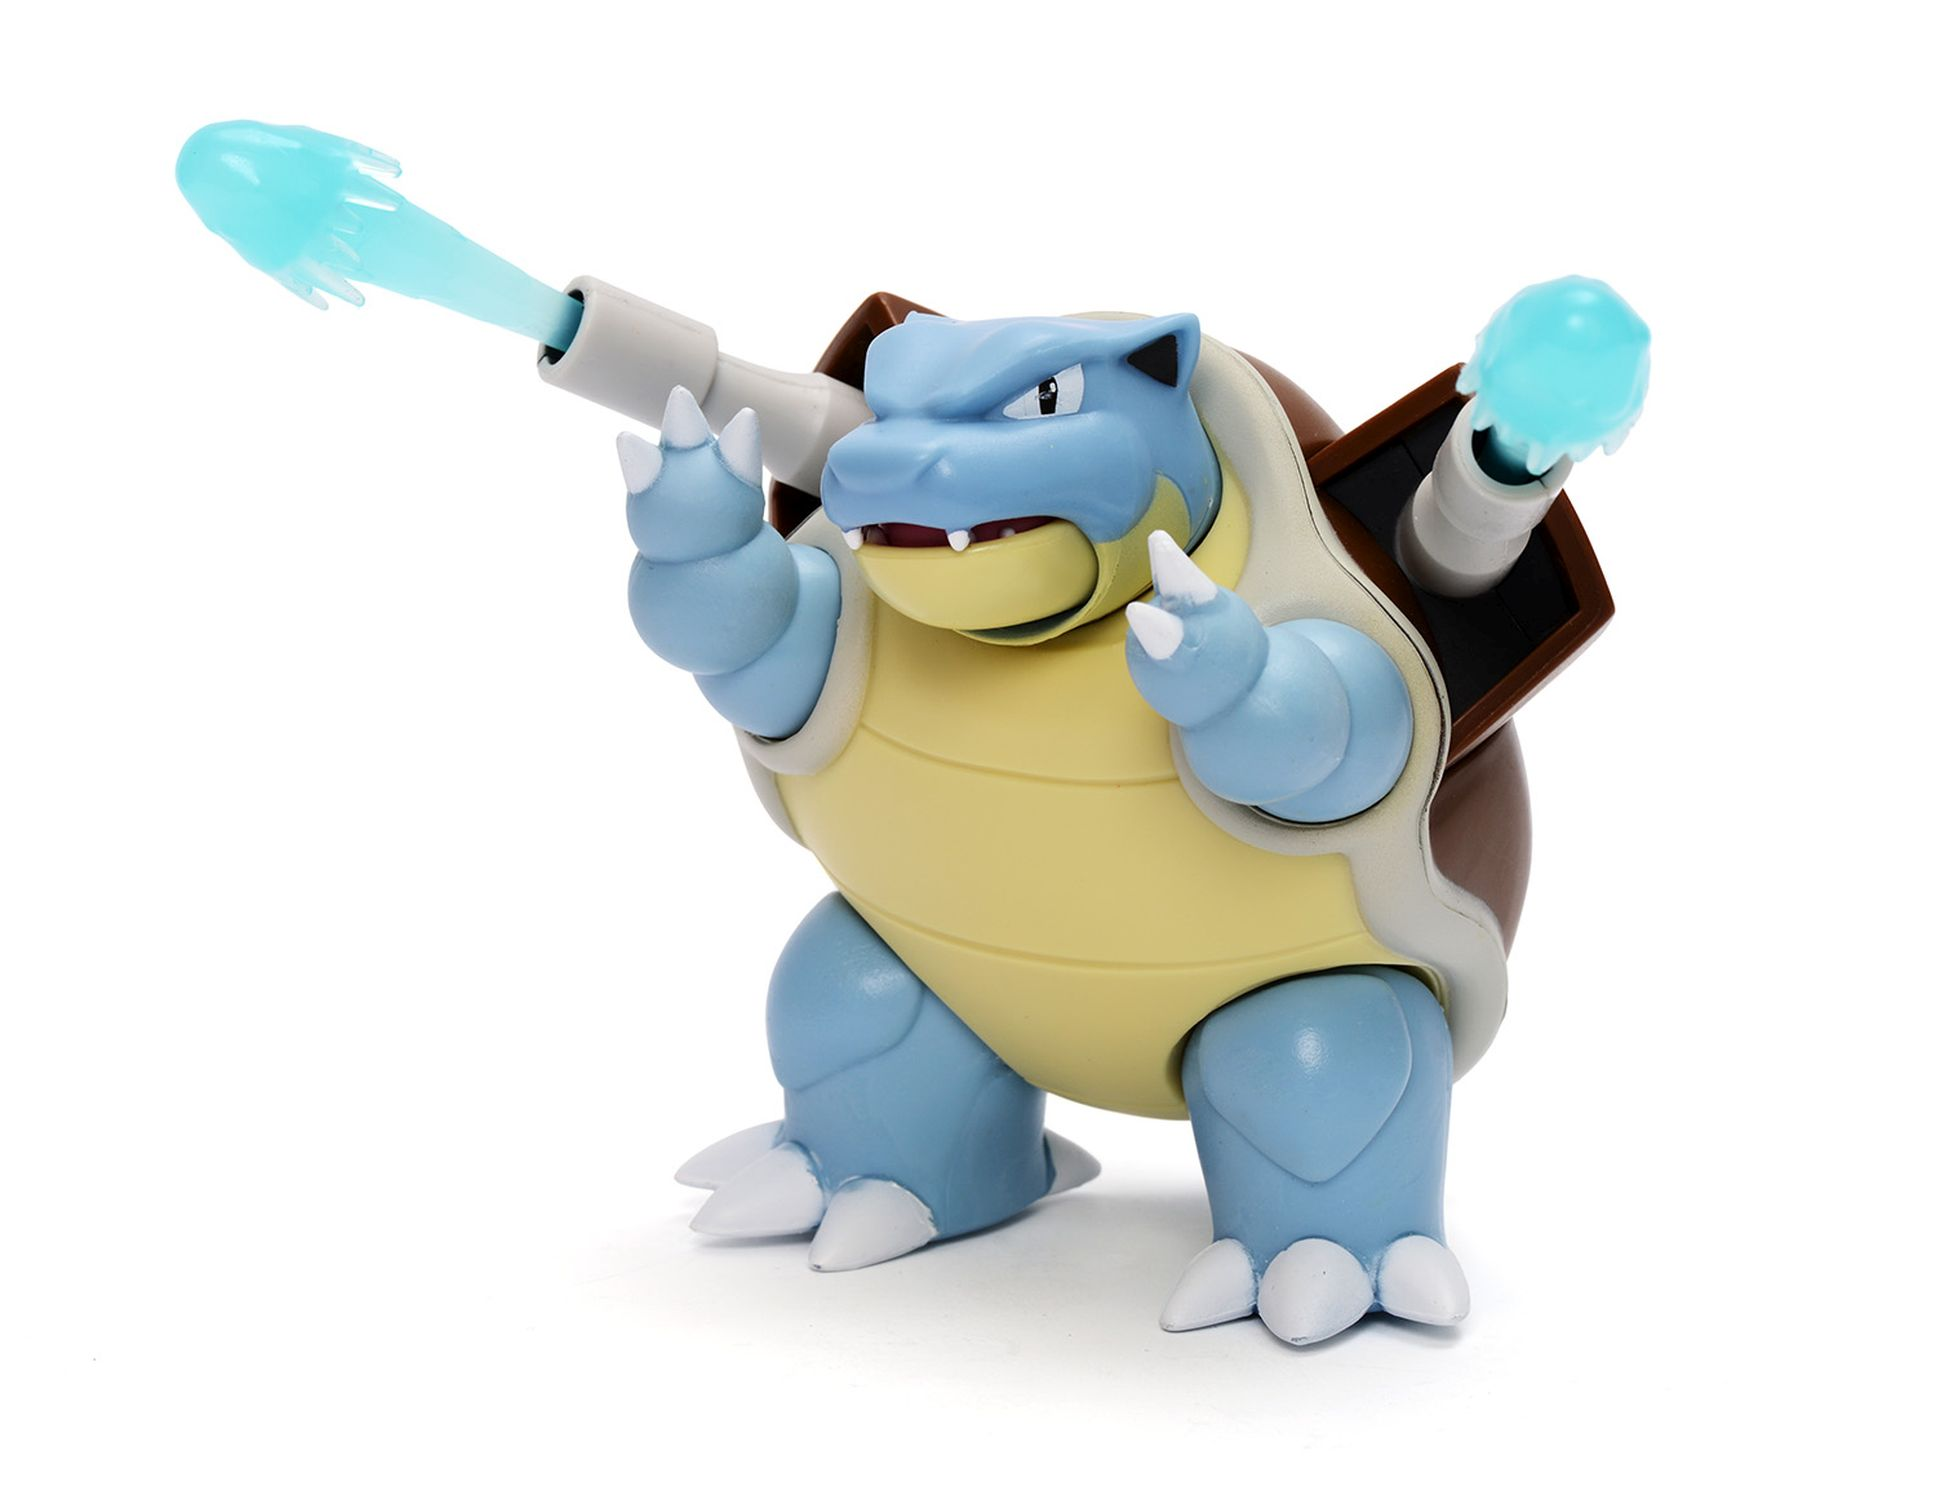 Pokémon Turtok - - Figur Battle Feature